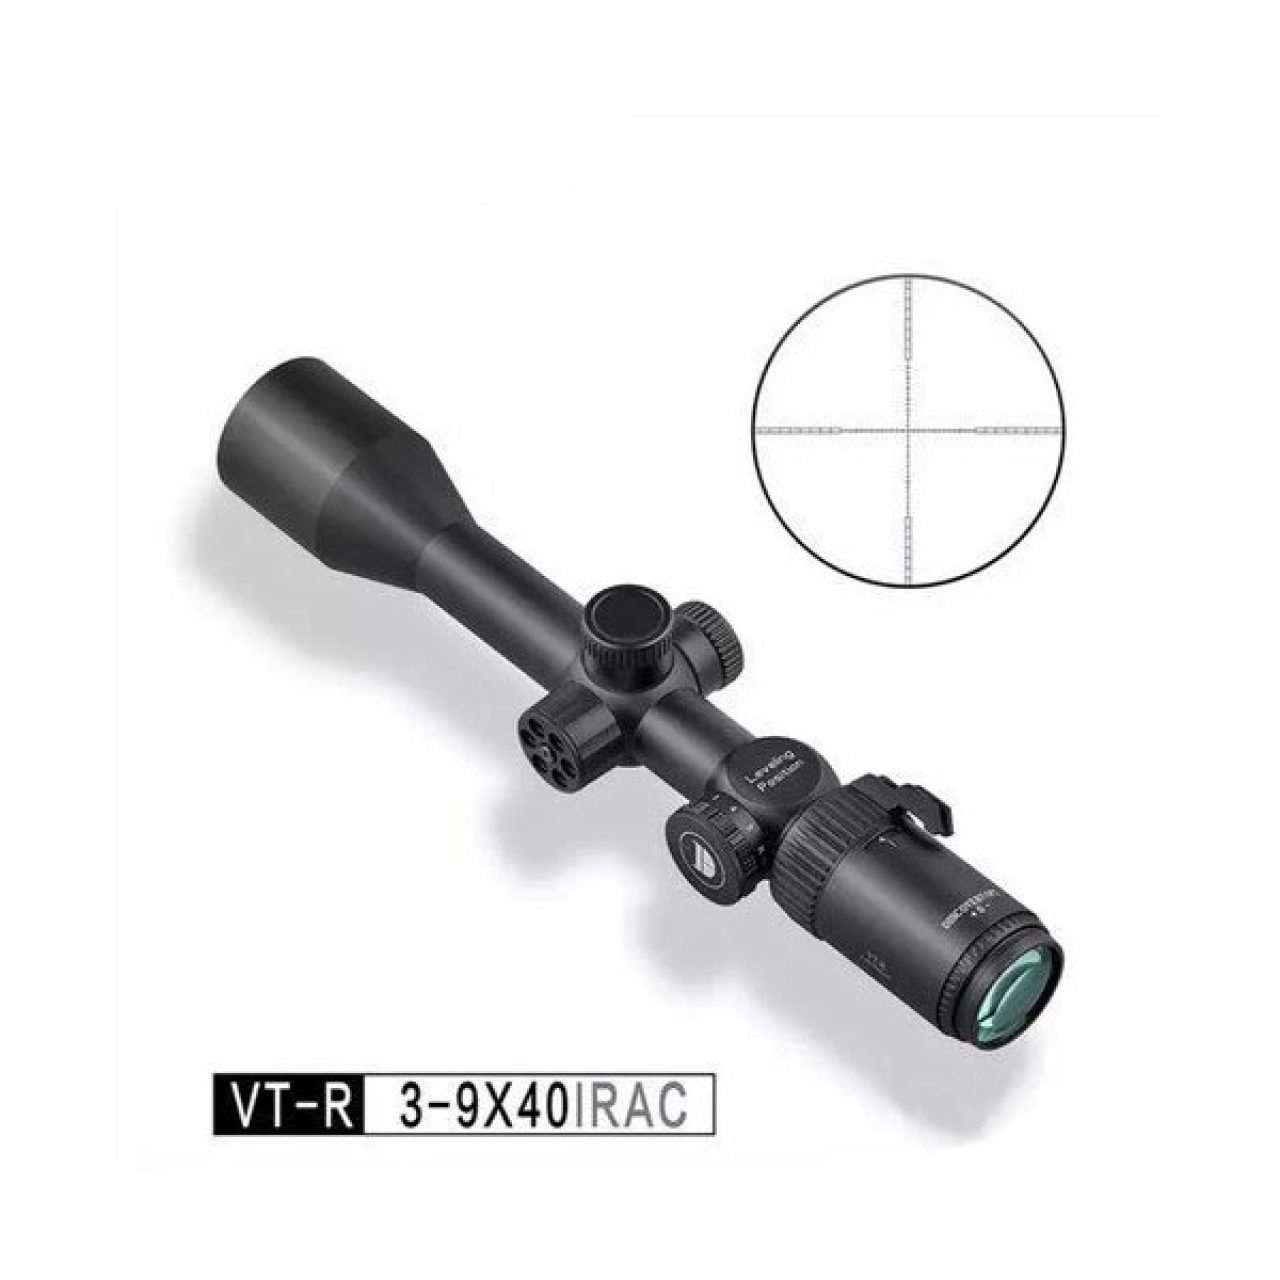 دوربین تفنگ بادی دیسکاوری مدل VT-R 3-9X40IRAC